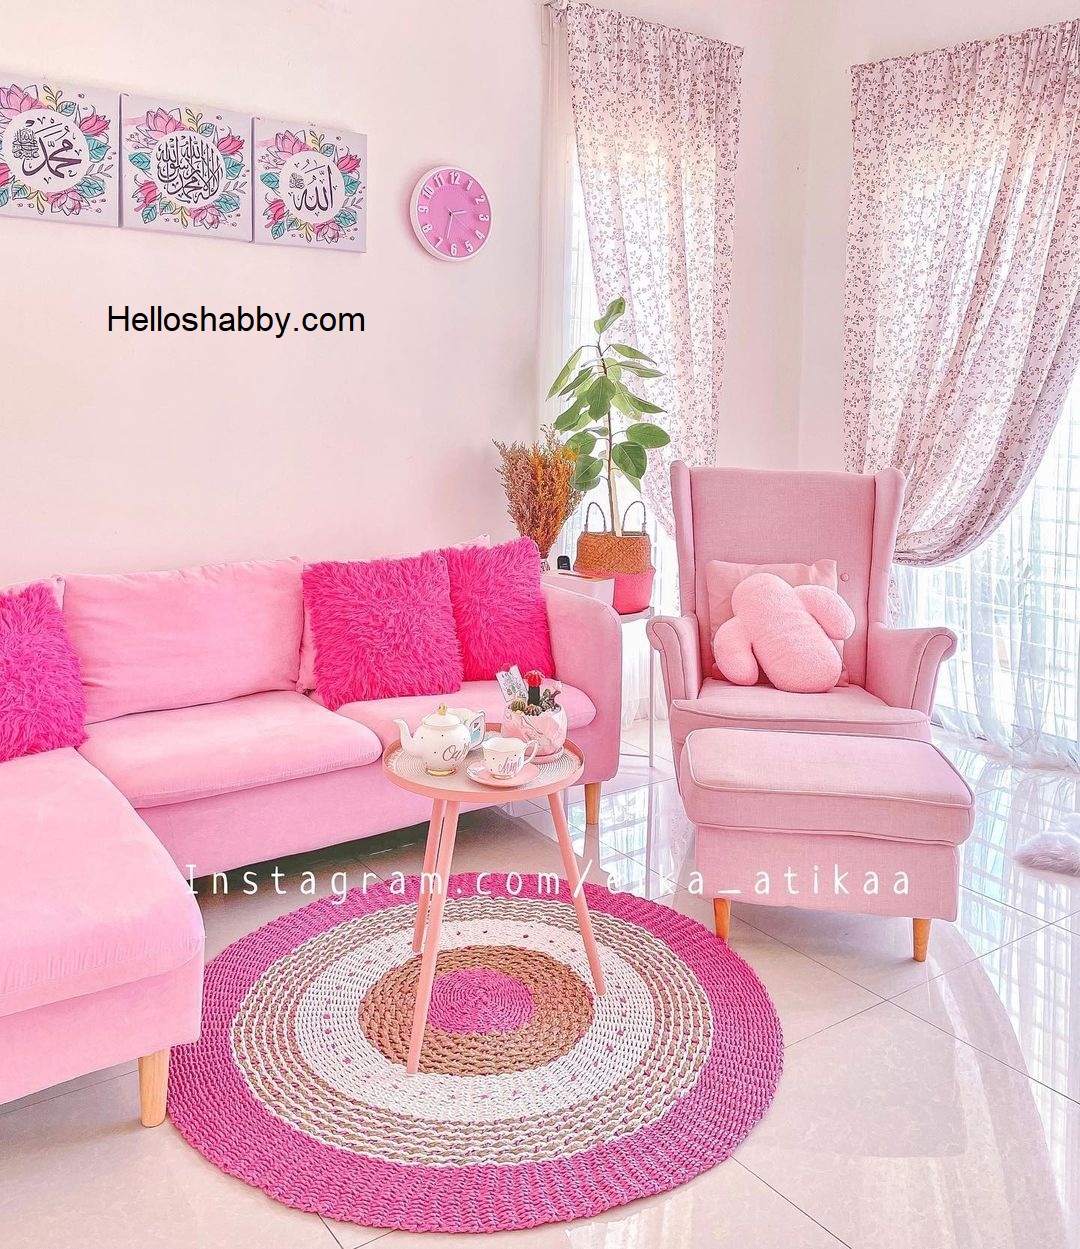 Desain Ruang Tamu Mungil Dengan Sentuhan Warna Pink Pastel Helloshabby Com Interior And Exterior Solutions